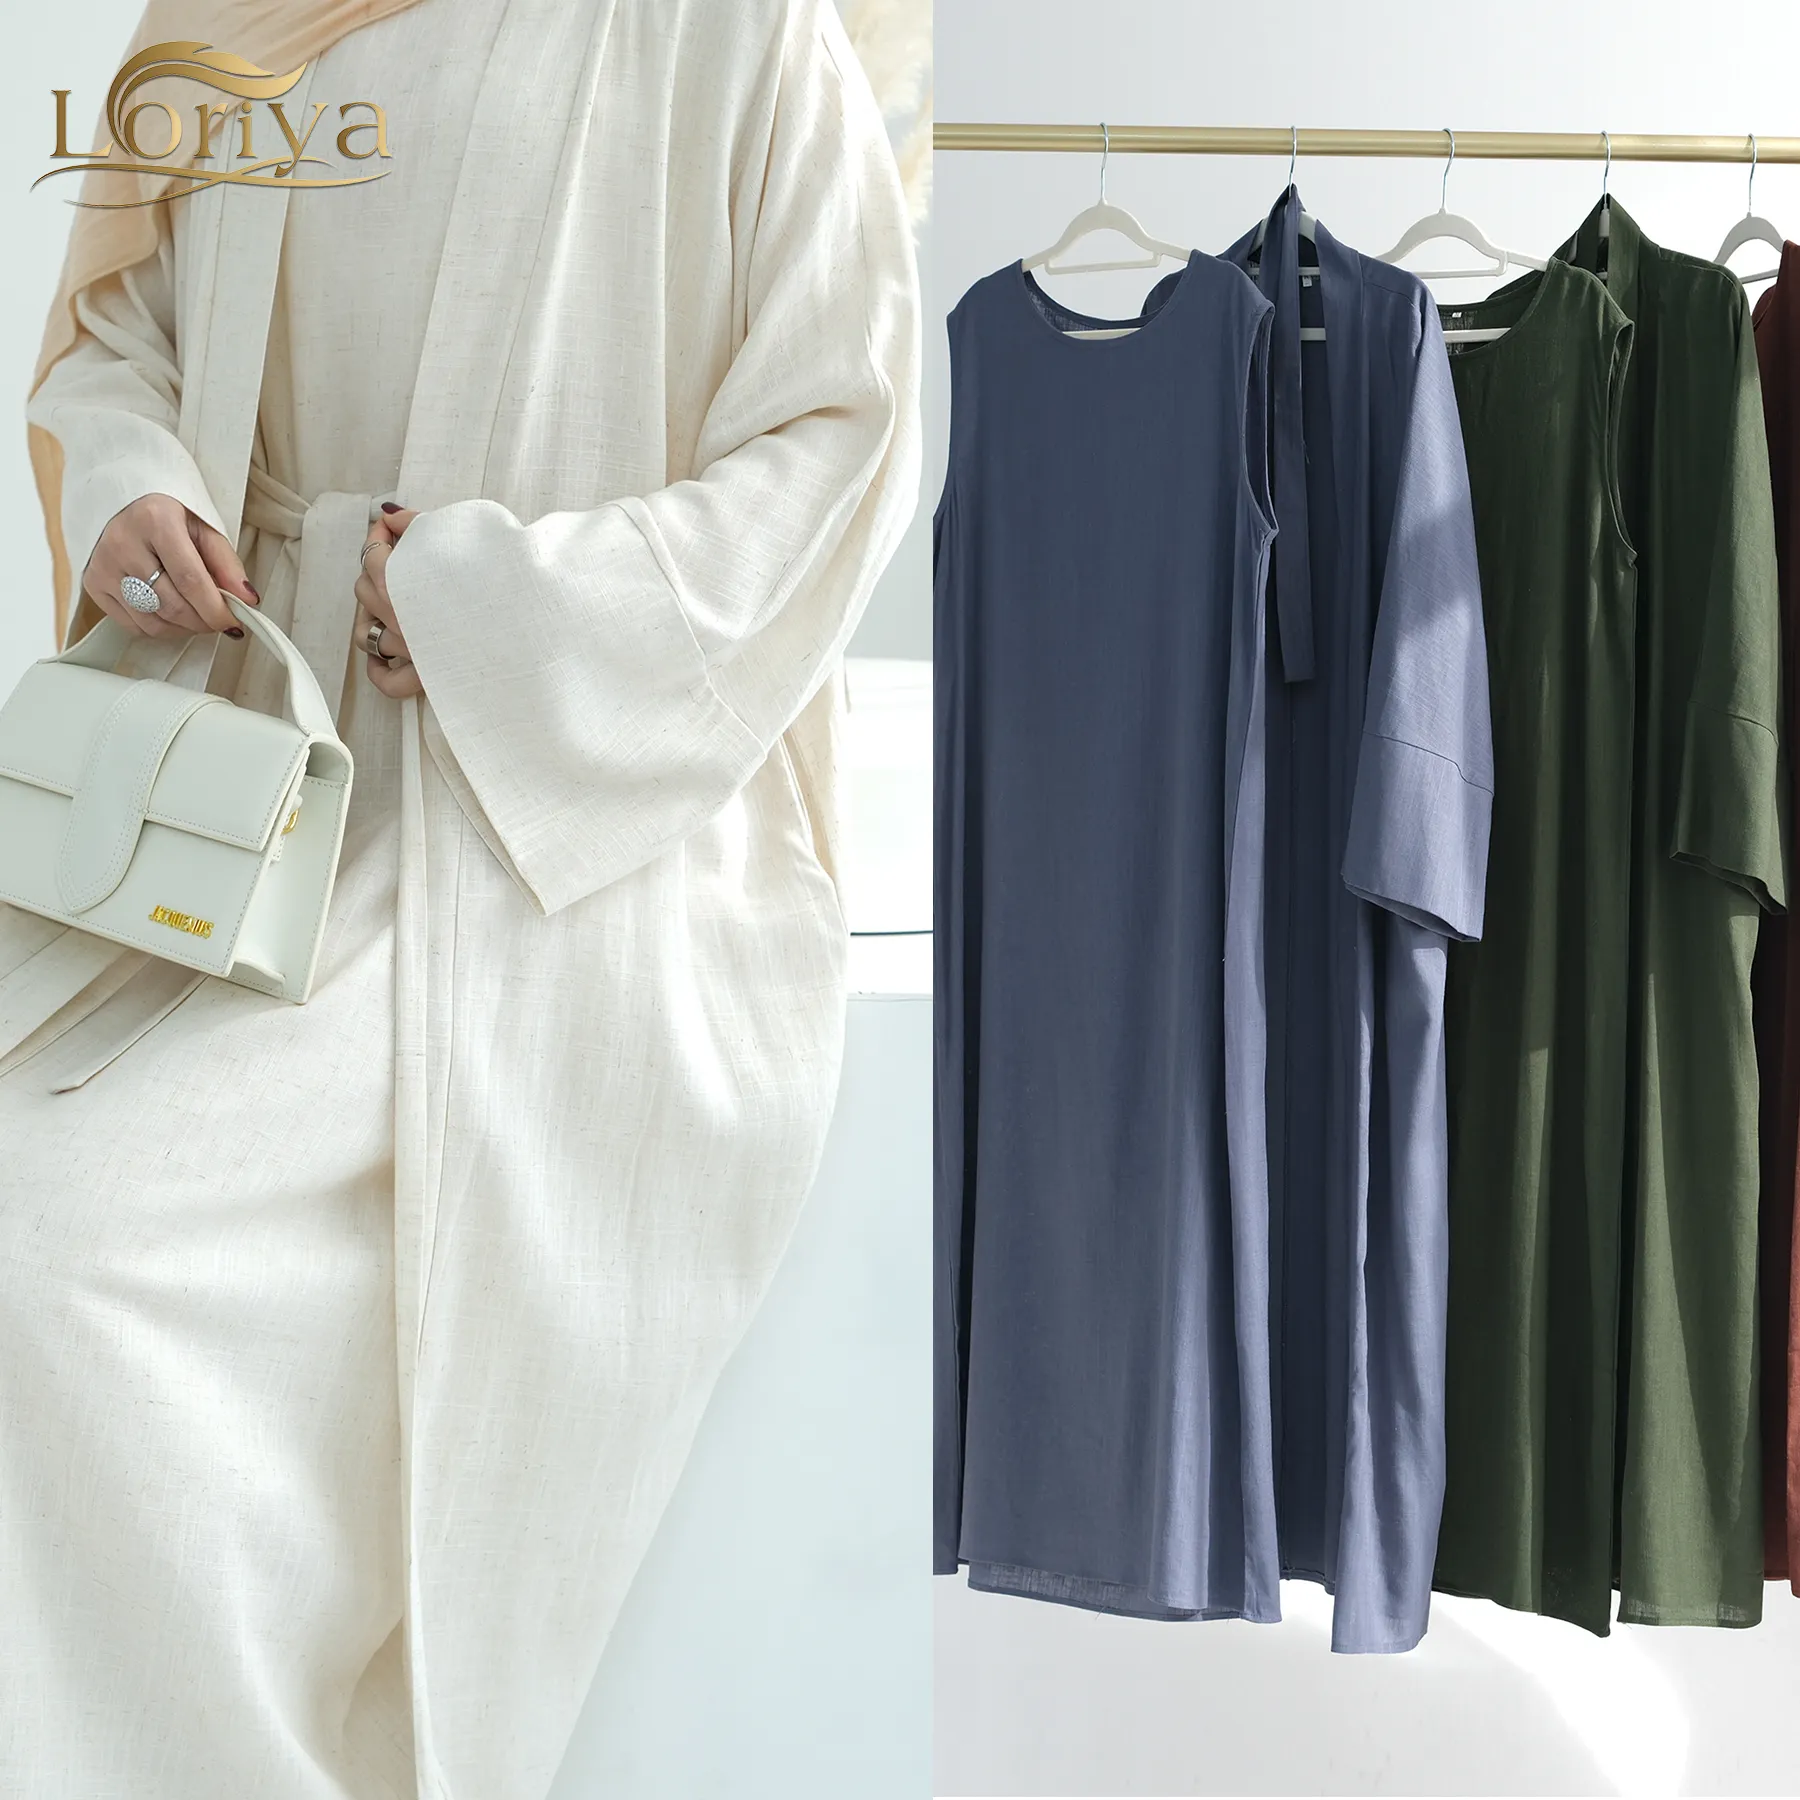 Loriya Abaya новая исламская одежда, скромный Премиальный льняной комплект из 2 предметов, абайя, женское мусульманское платье, коллекция индейки